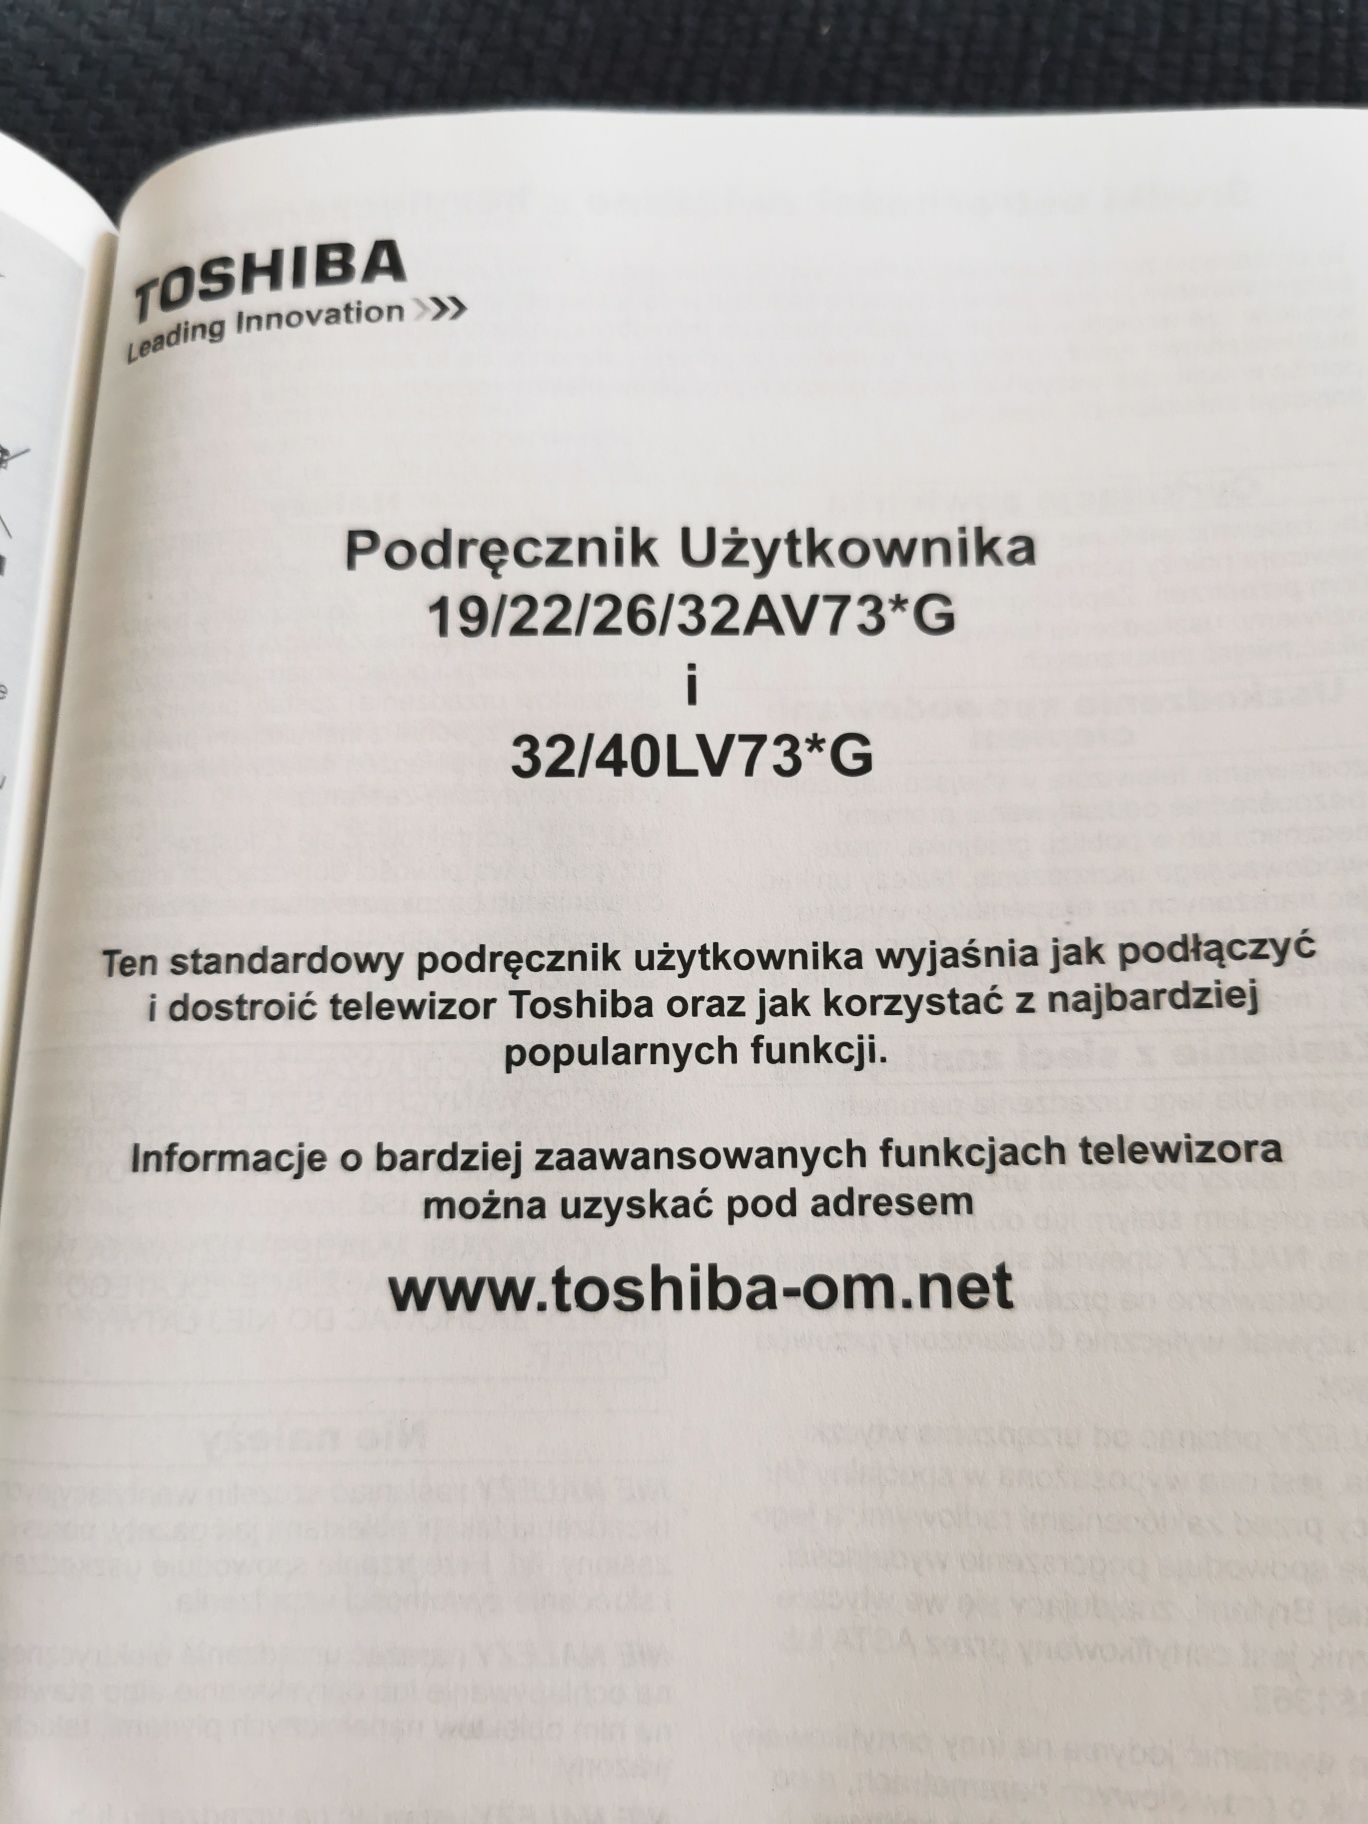 Instrukcja do TV Toshiba LV73G i AV73G